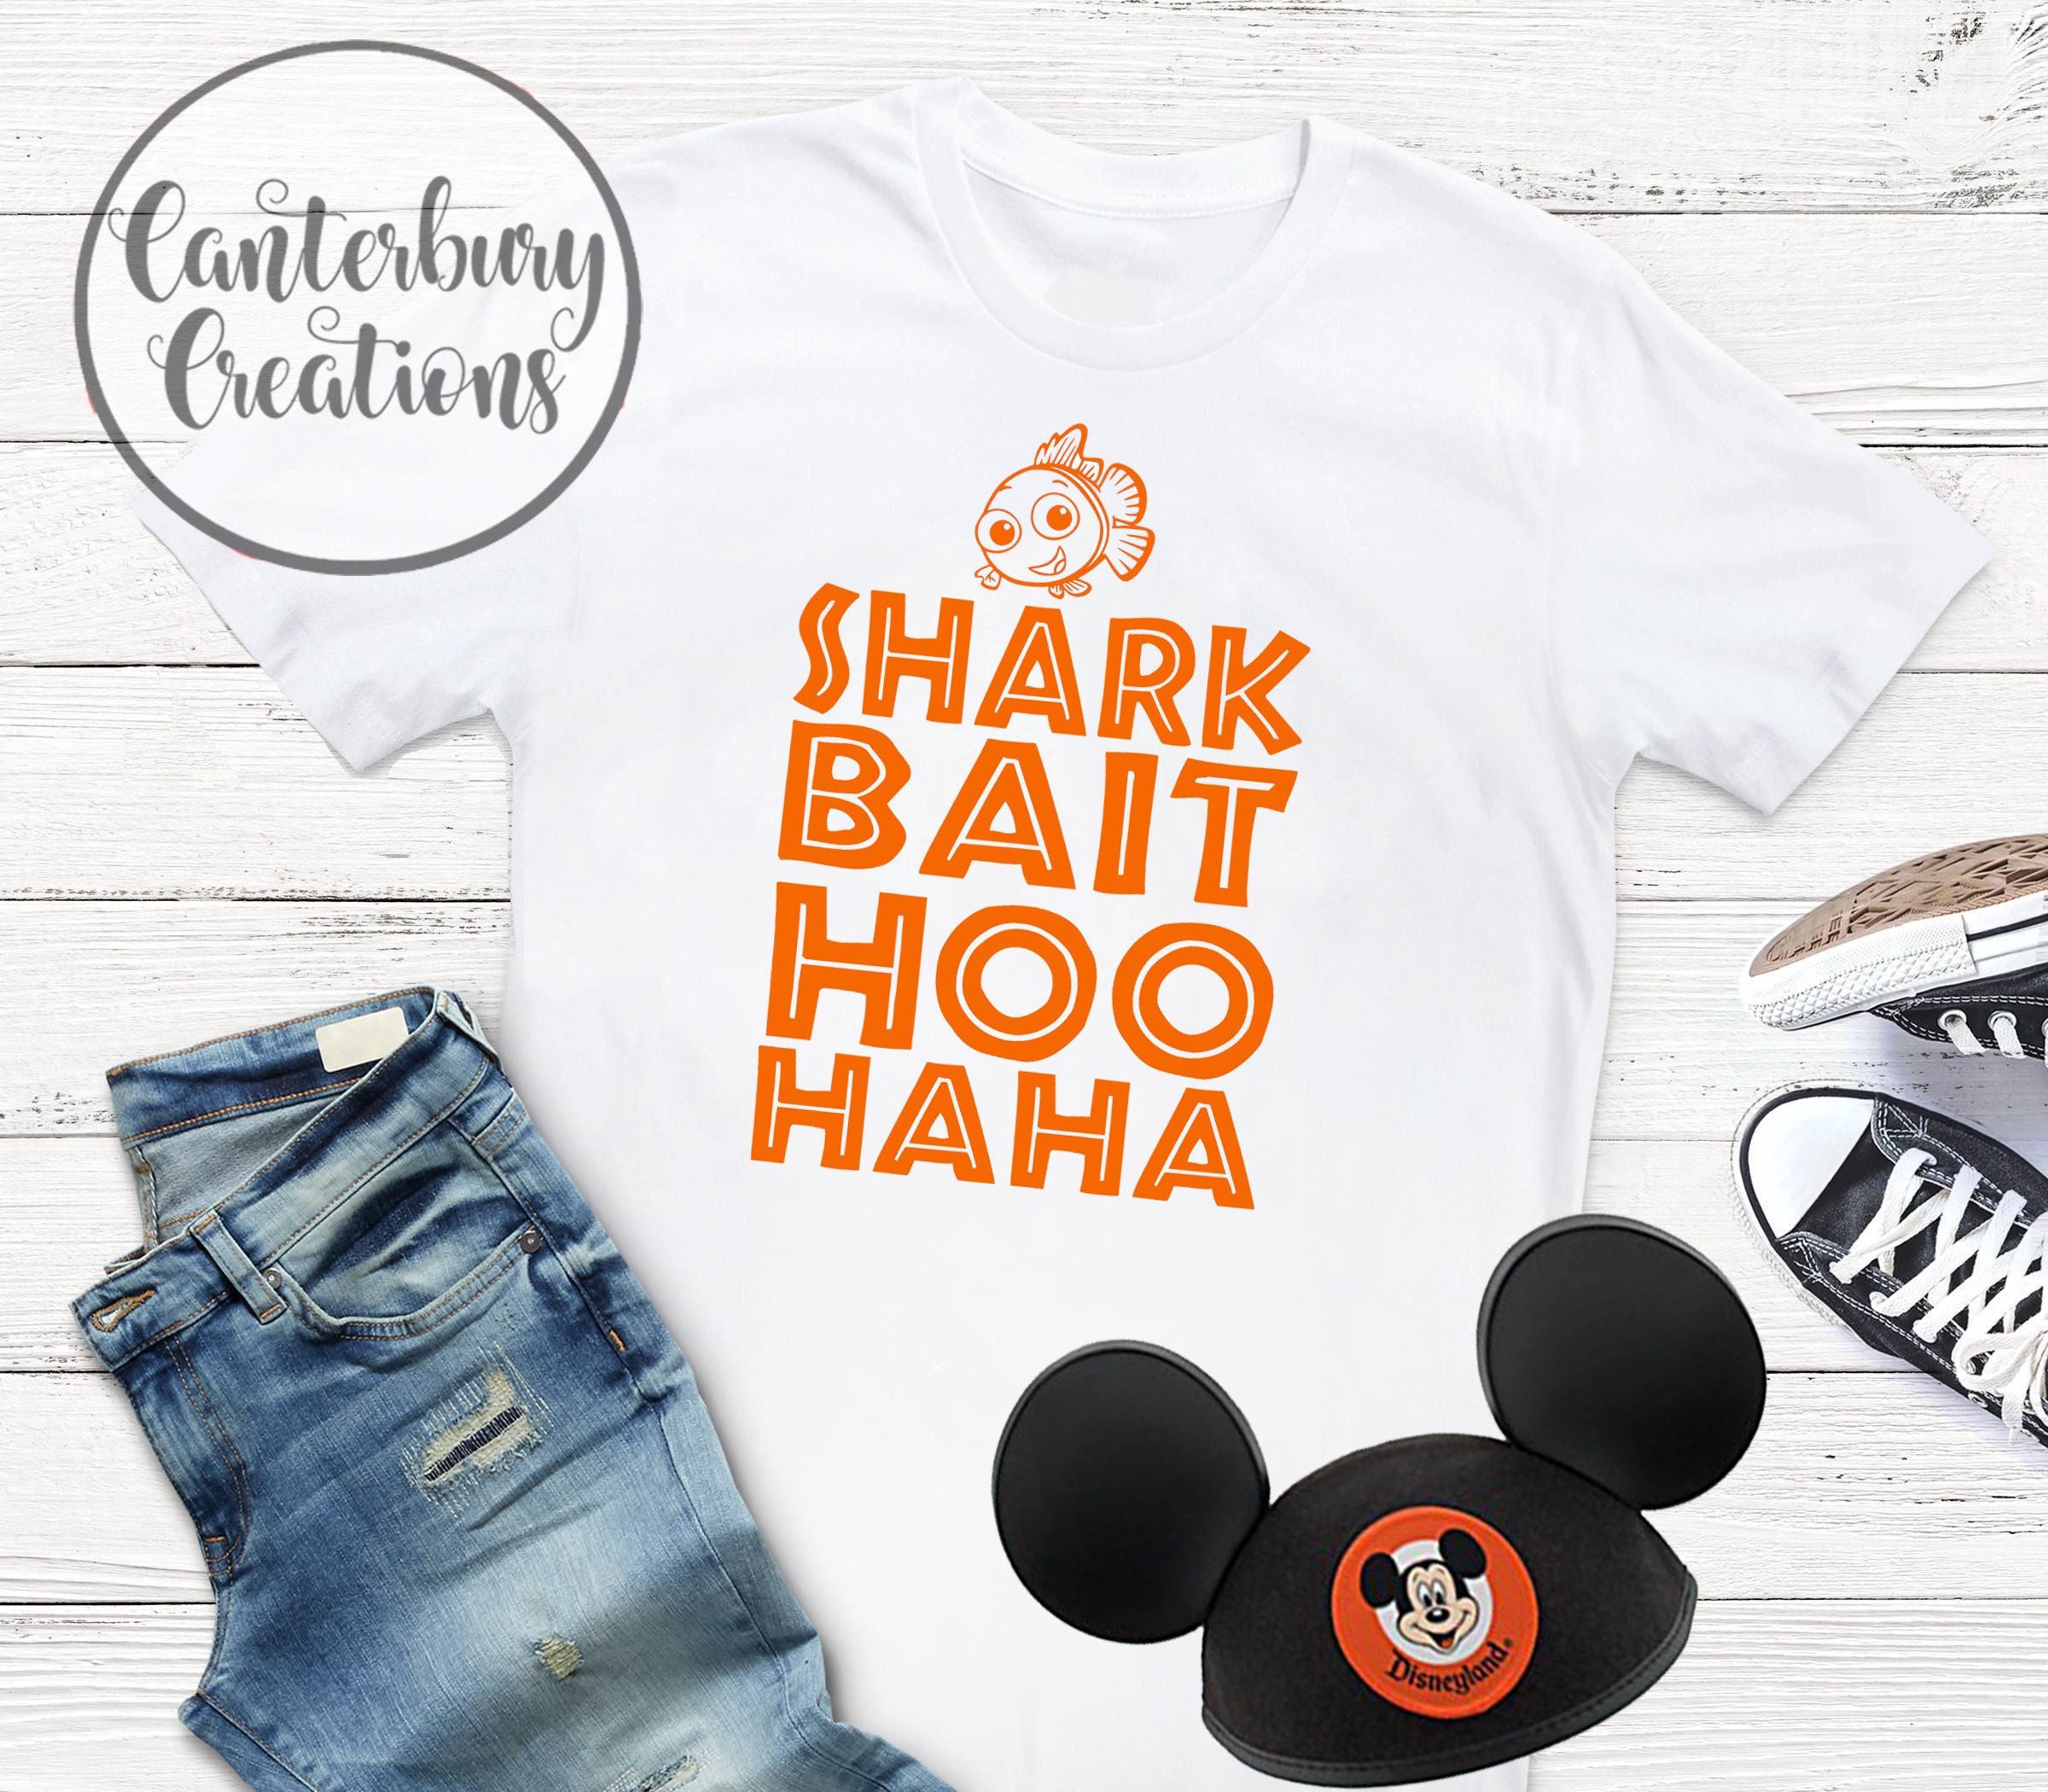 Shark Bait Hoo Haha Shirt Disney Vacation Disney Shirts Disney